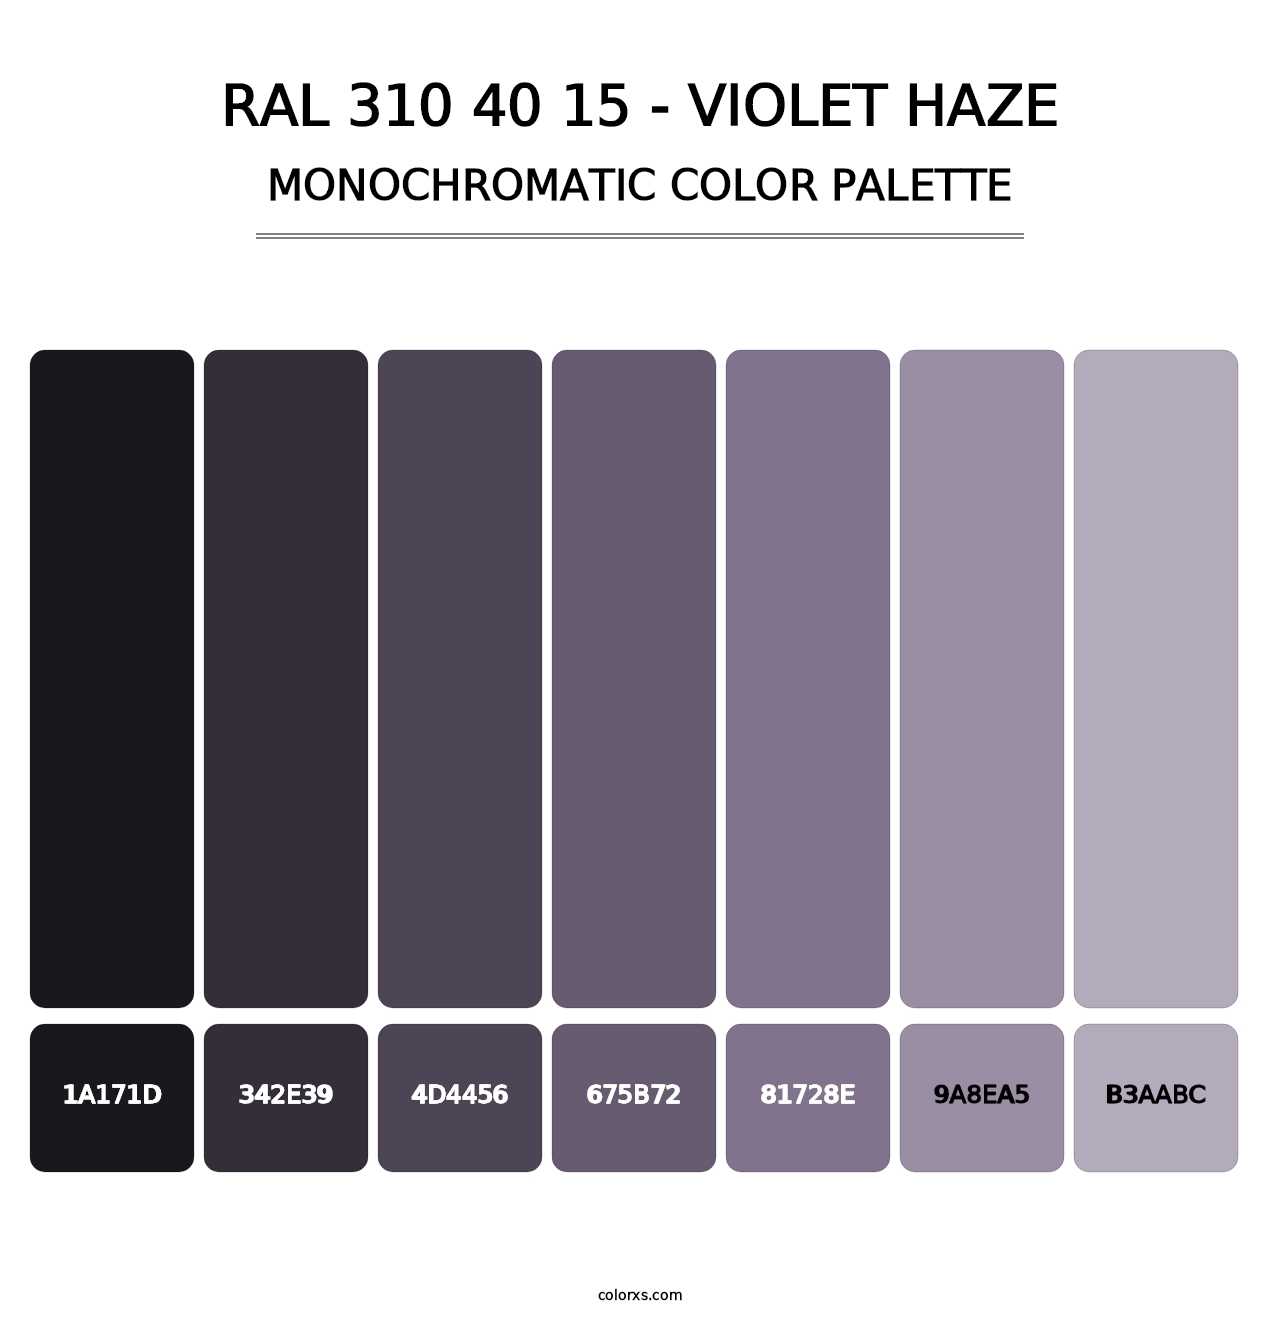 RAL 310 40 15 - Violet Haze - Monochromatic Color Palette